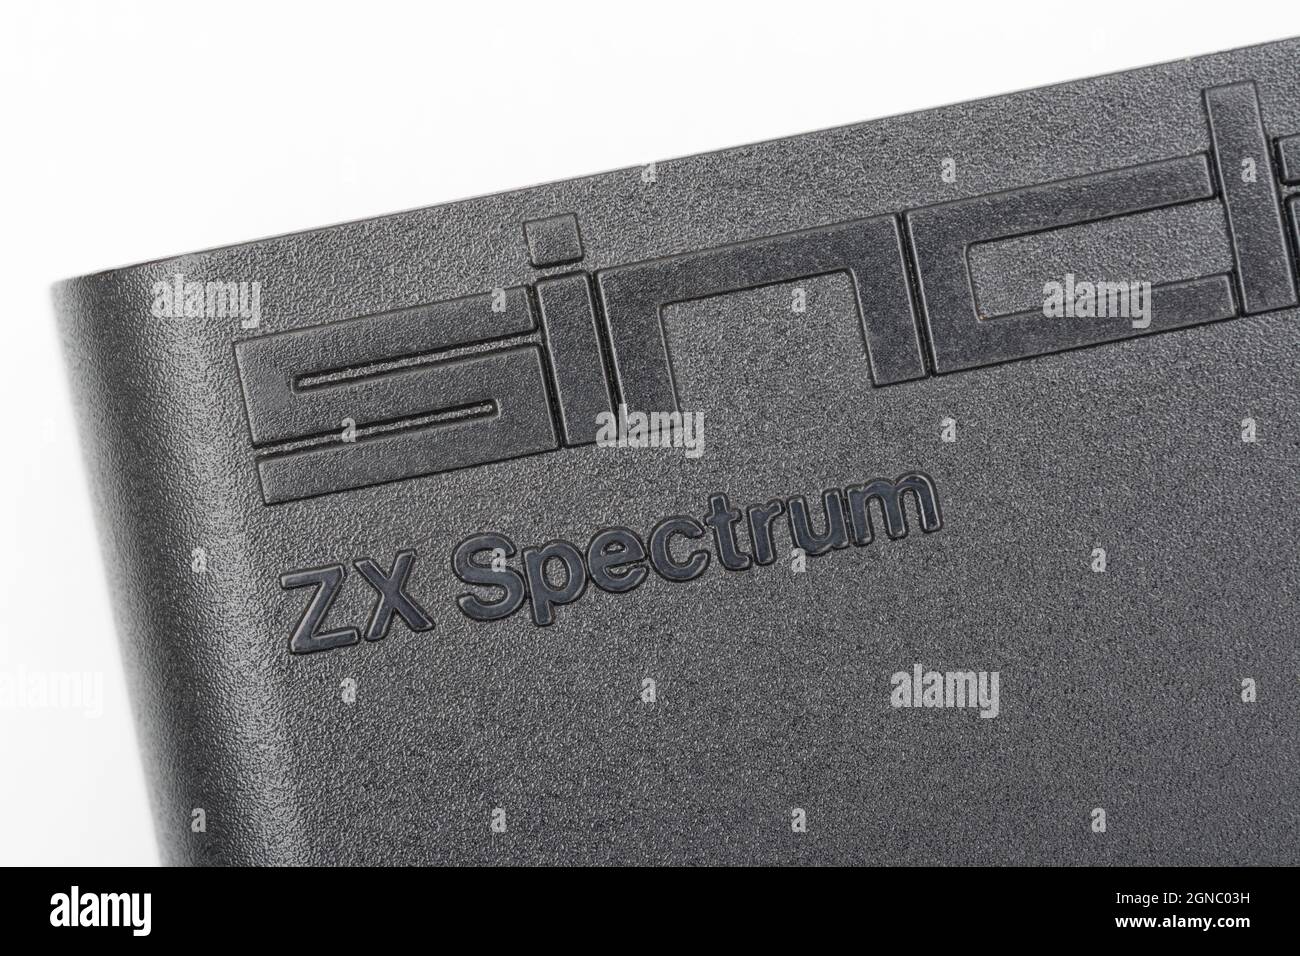 Immagine ravvicinata del logo in rilievo Sinclair ZX Spectrum sulla custodia nera. Computer domestico vintage a 8 bit degli anni '80 che ha ispirato una generazione di programmatori. Foto Stock